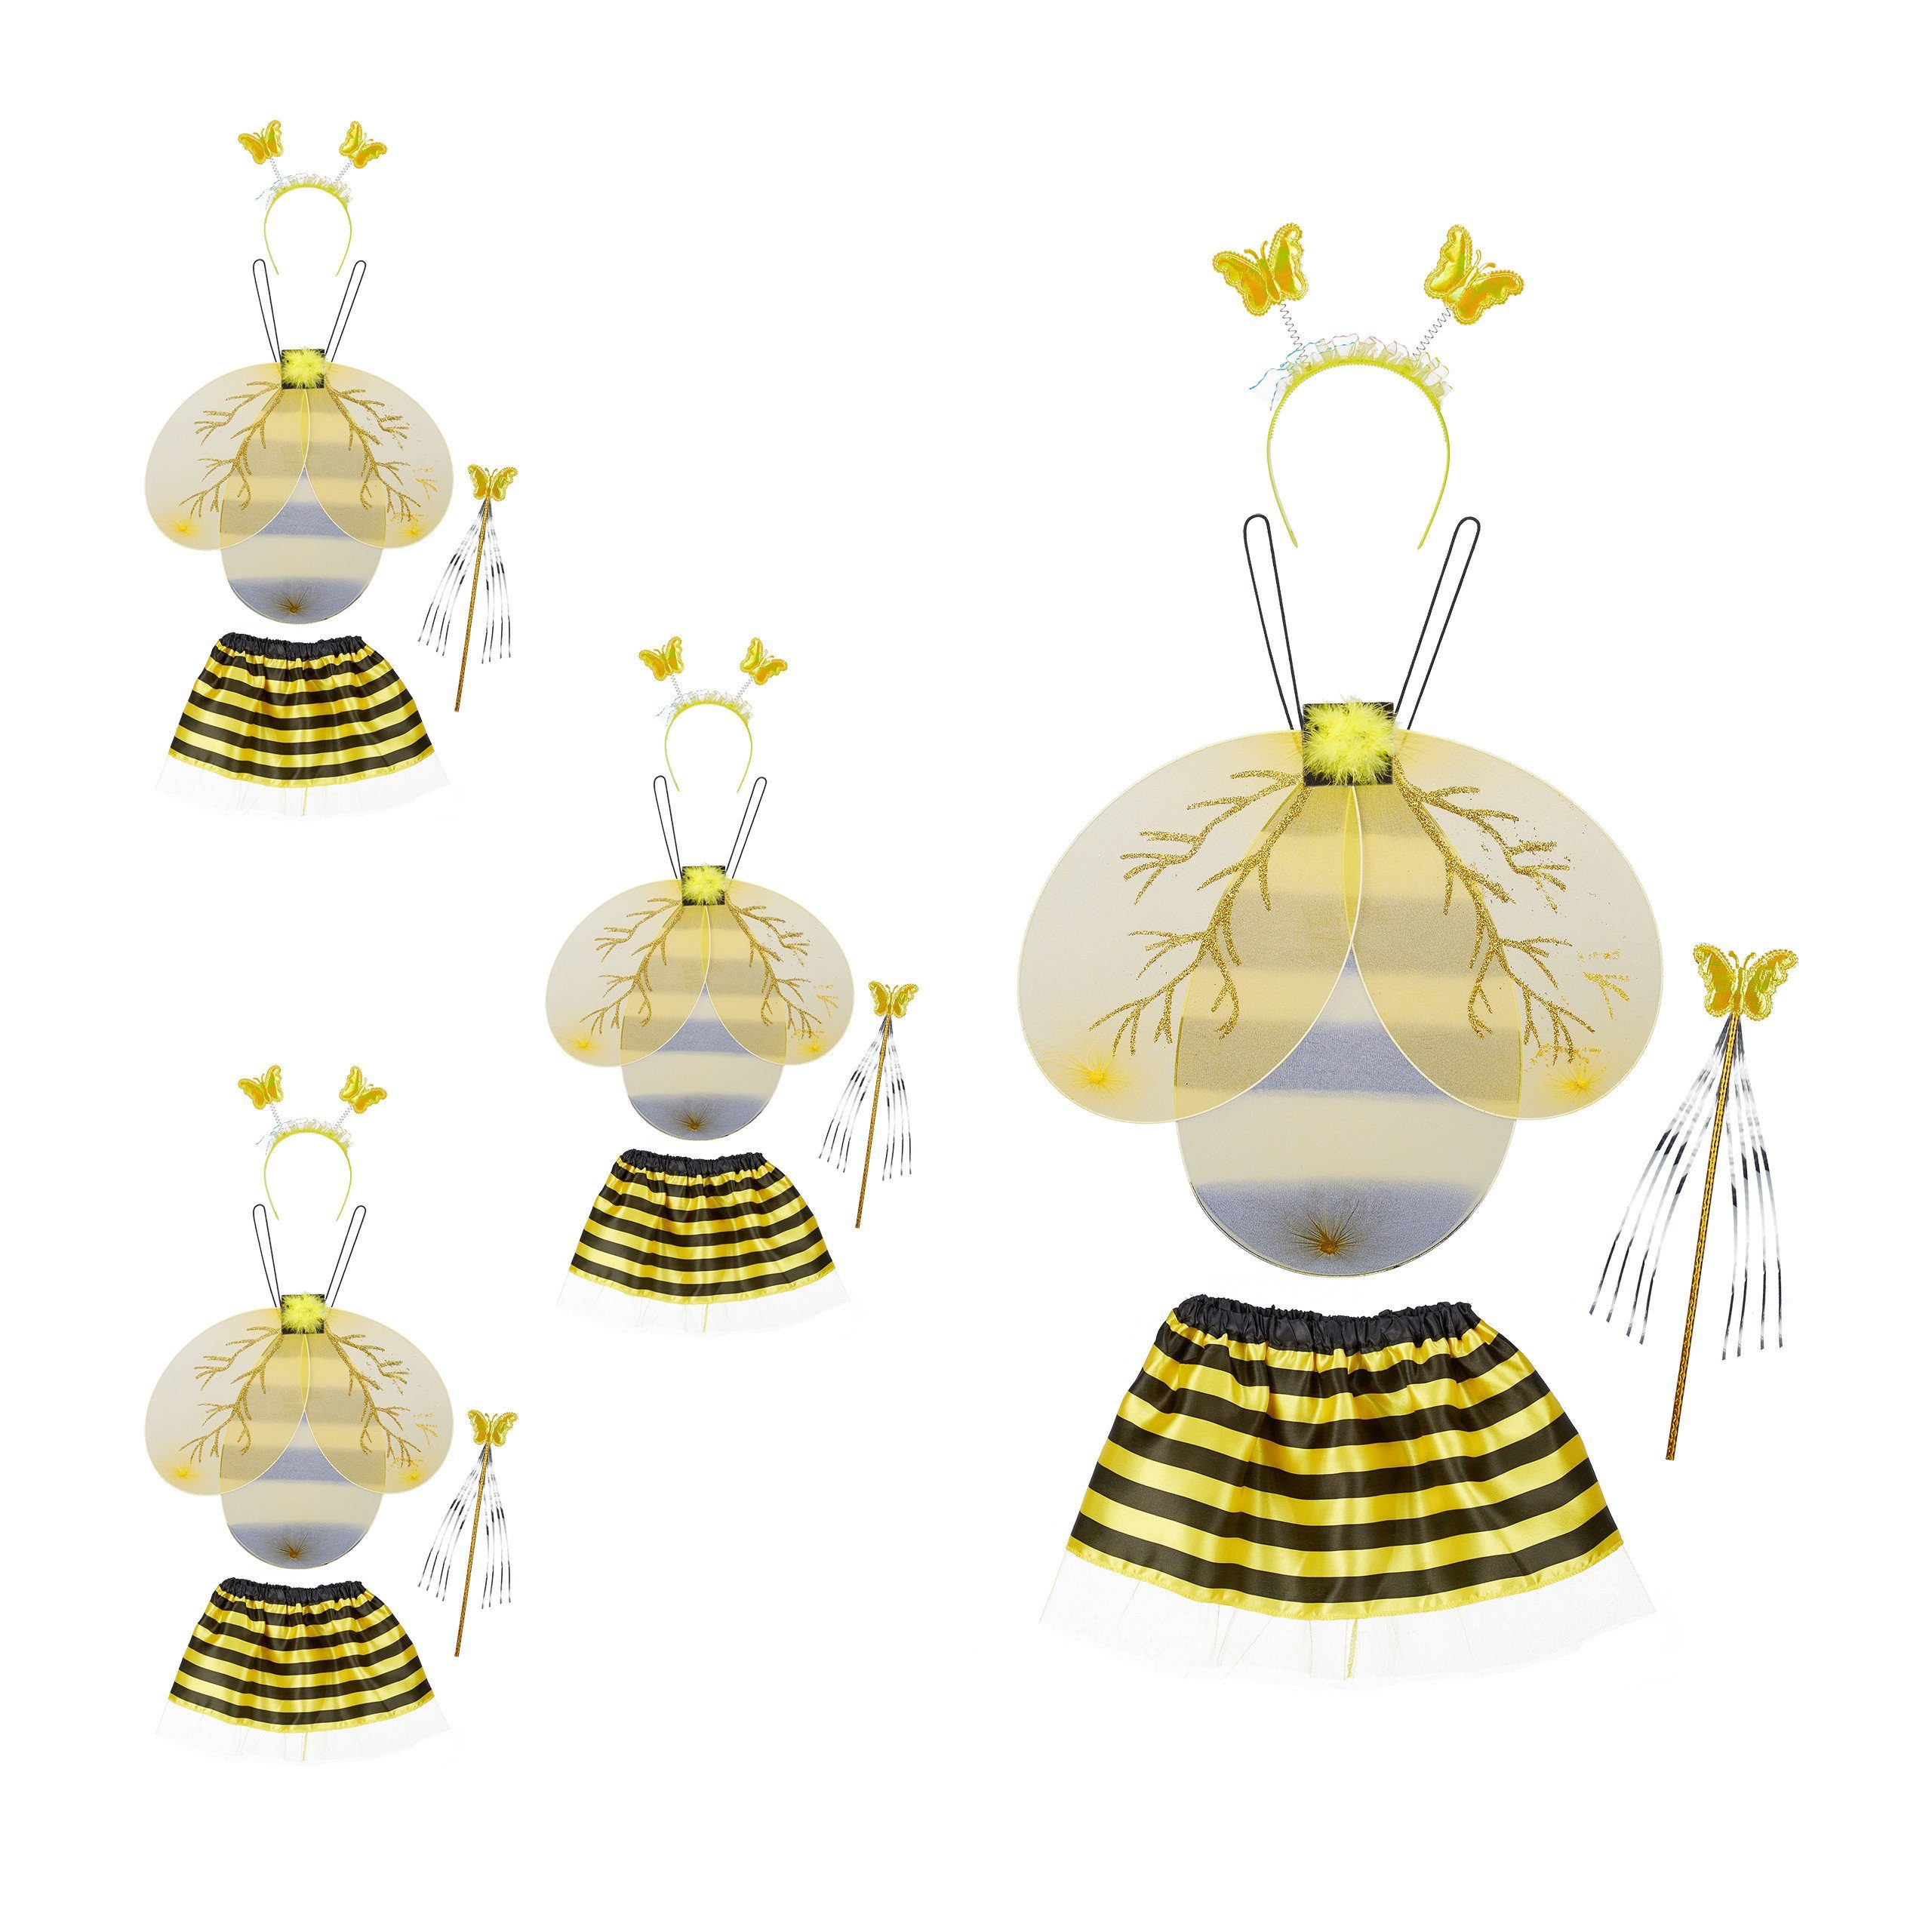 relaxdays Kostüm 4 x Bienenkostüm Kinder, Bienchen Kinderkostüm: 4x  Kostümset aus Bienenflügel, Haarreif, Zauberstab und schwarz-gelbem Rock  online kaufen | OTTO